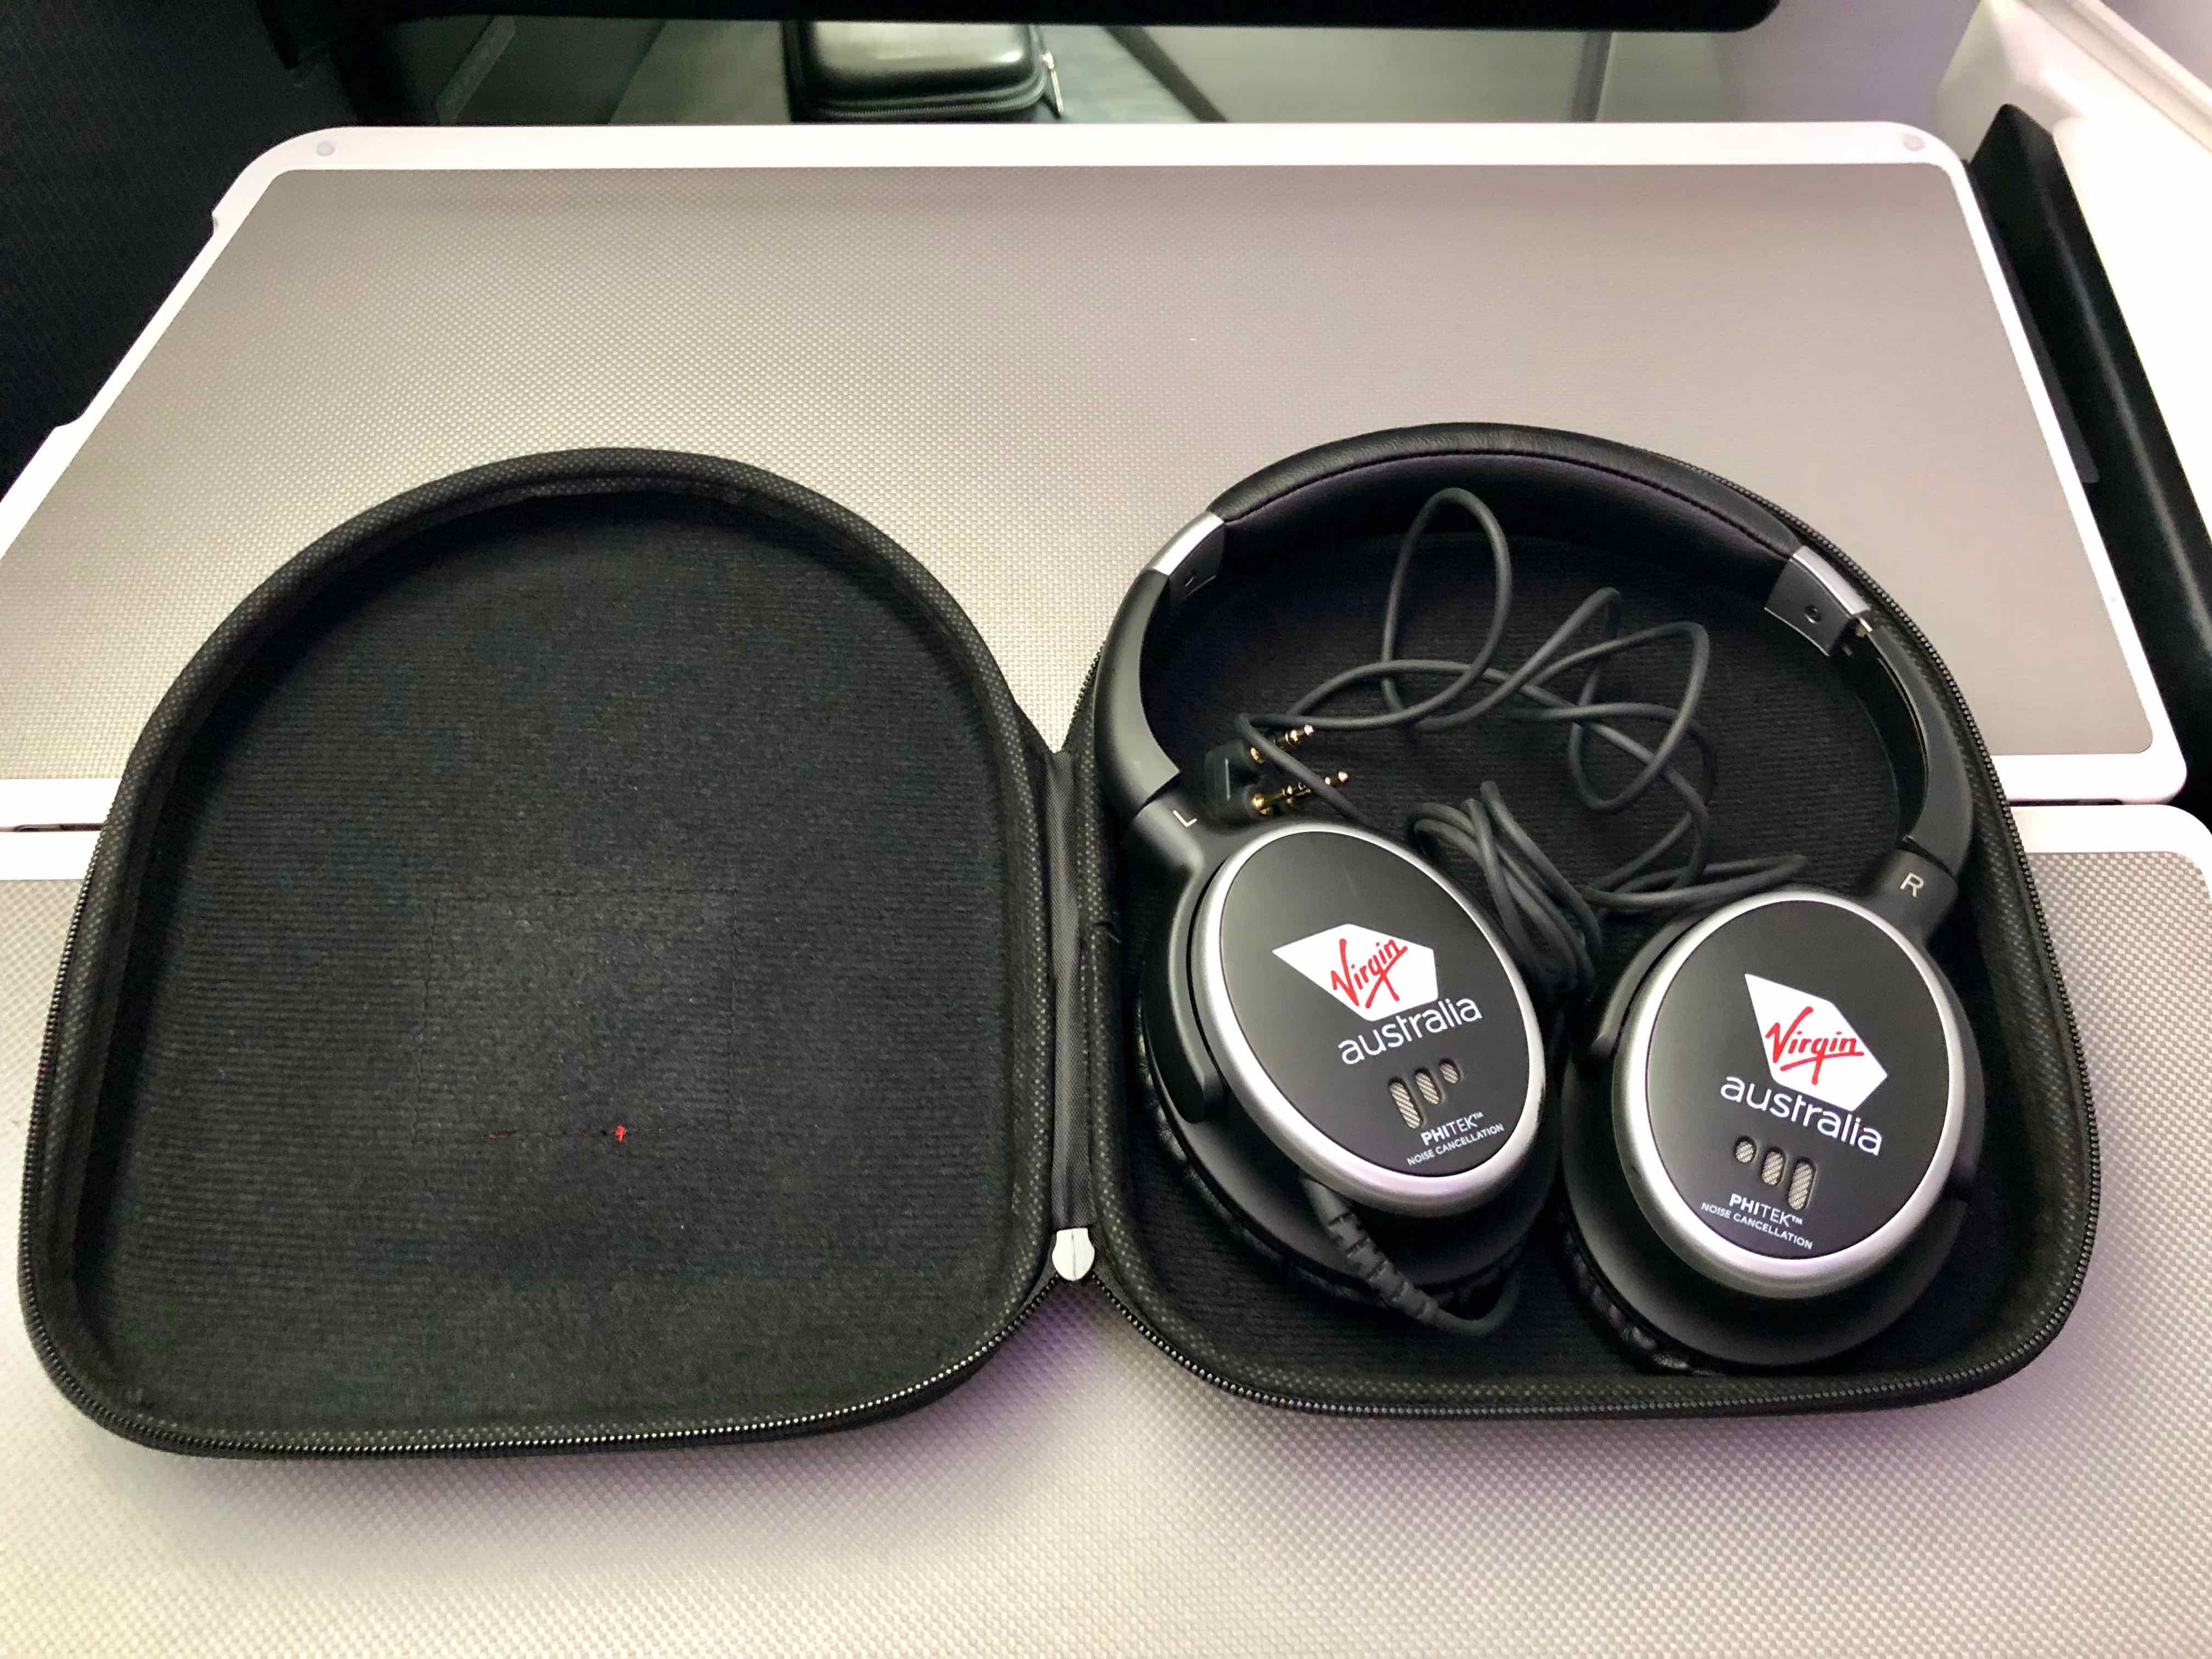 Virgin Australia A330 Business Class headphones